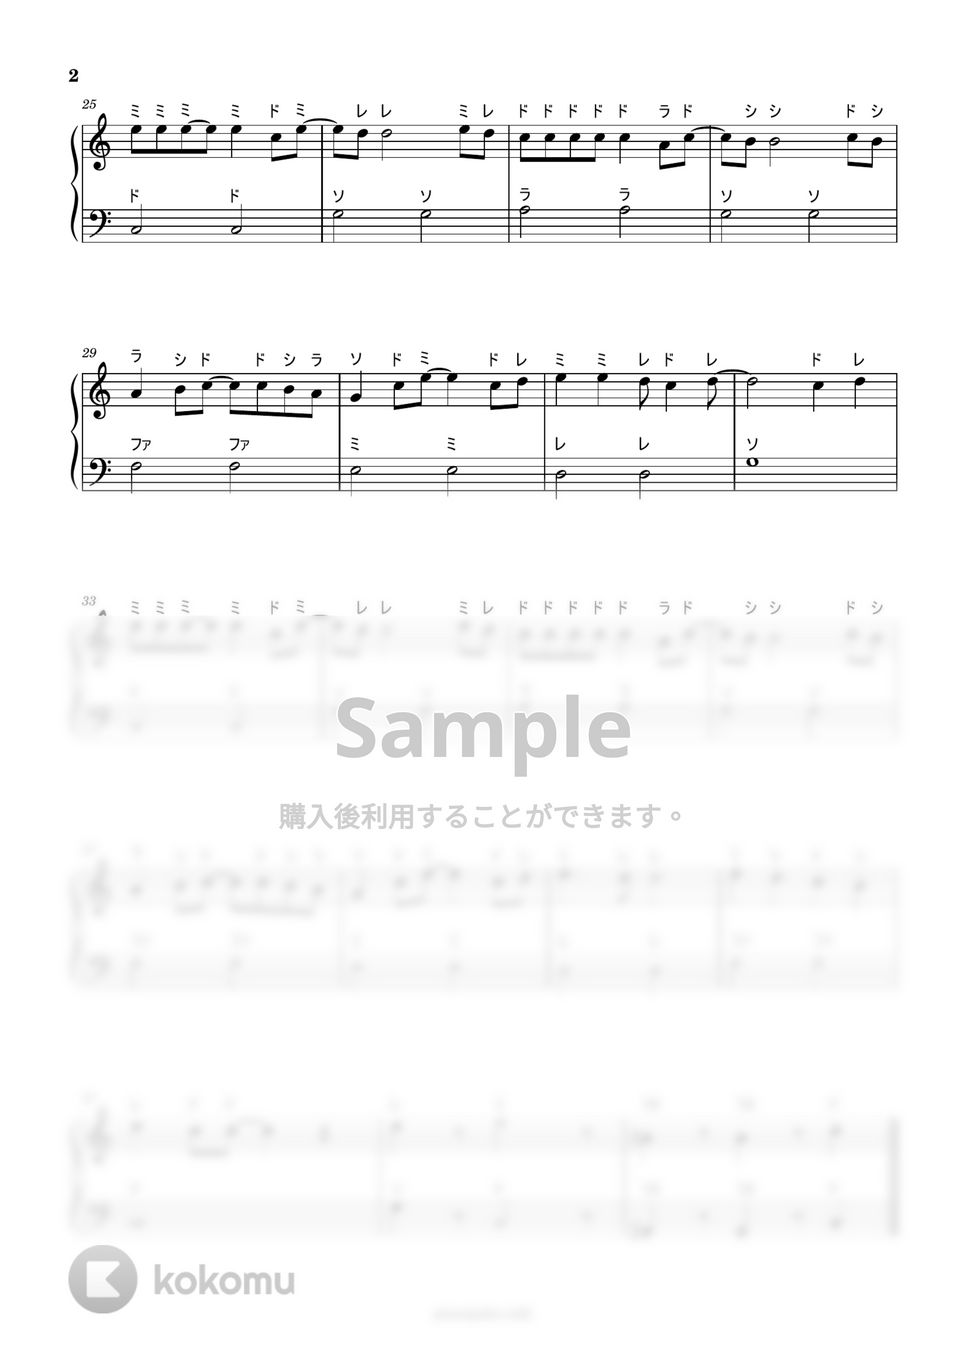 忍たま乱太郎 - 勇気100% (ドレミ付き簡単楽譜) by ピアノ塾